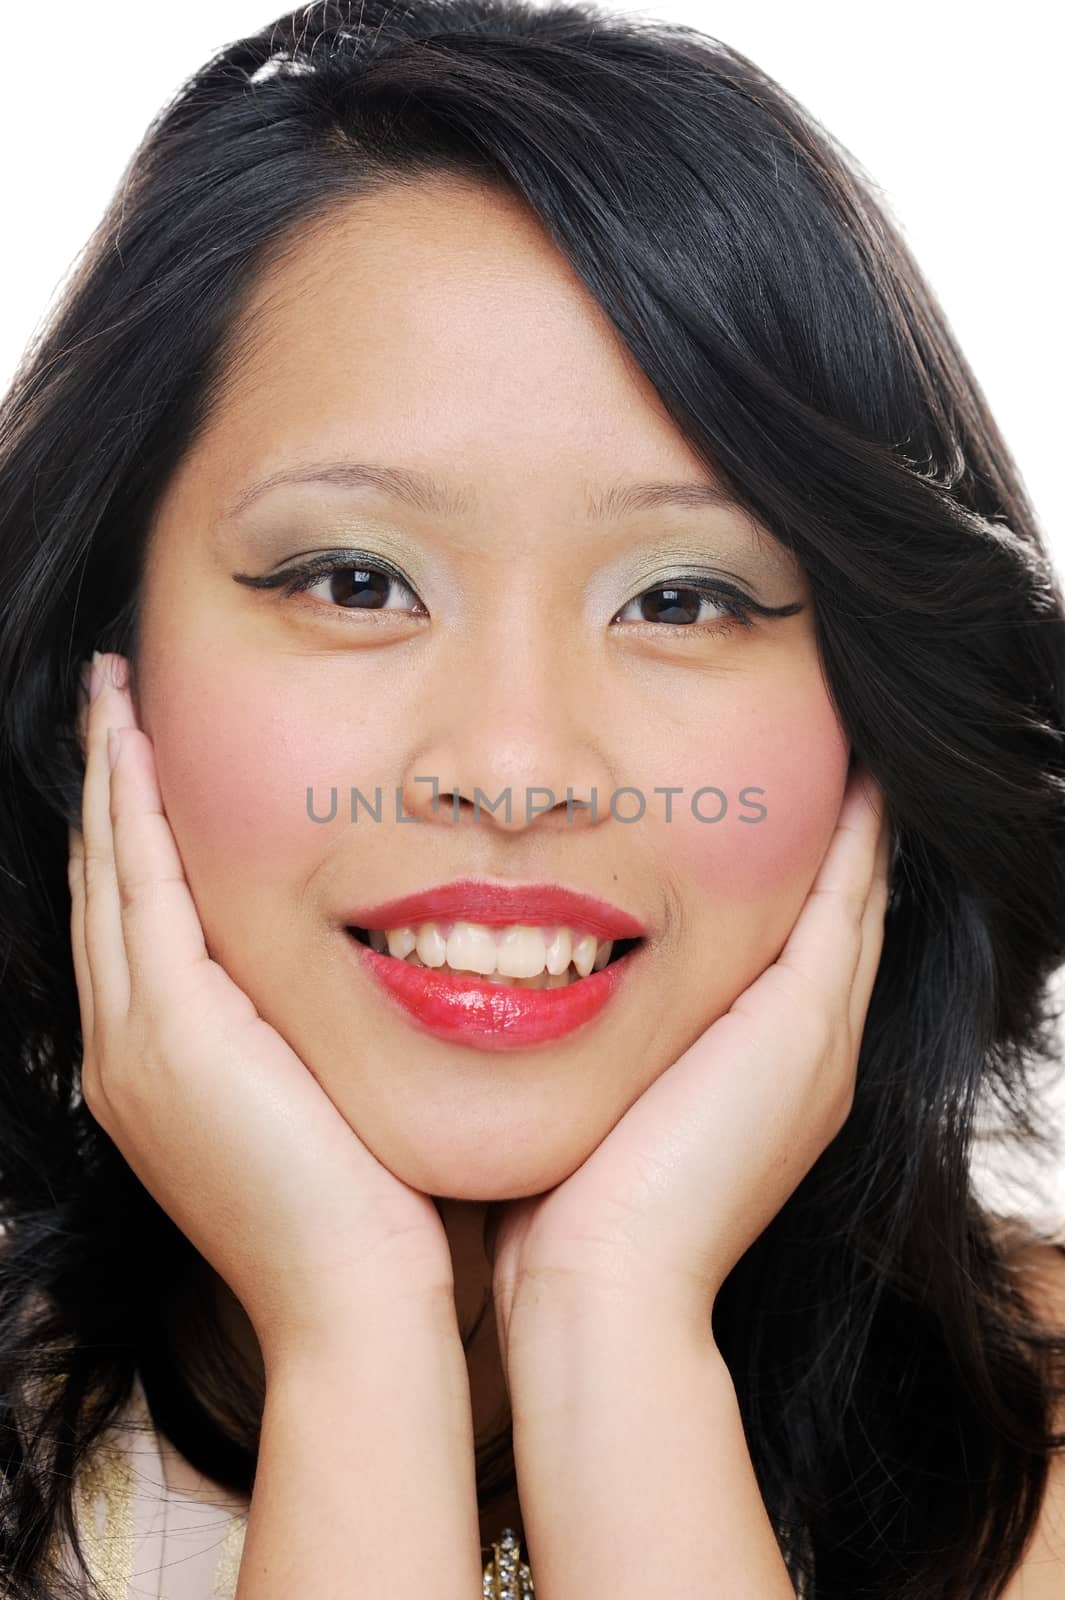 Asian girl smiling closeup wearing makeup